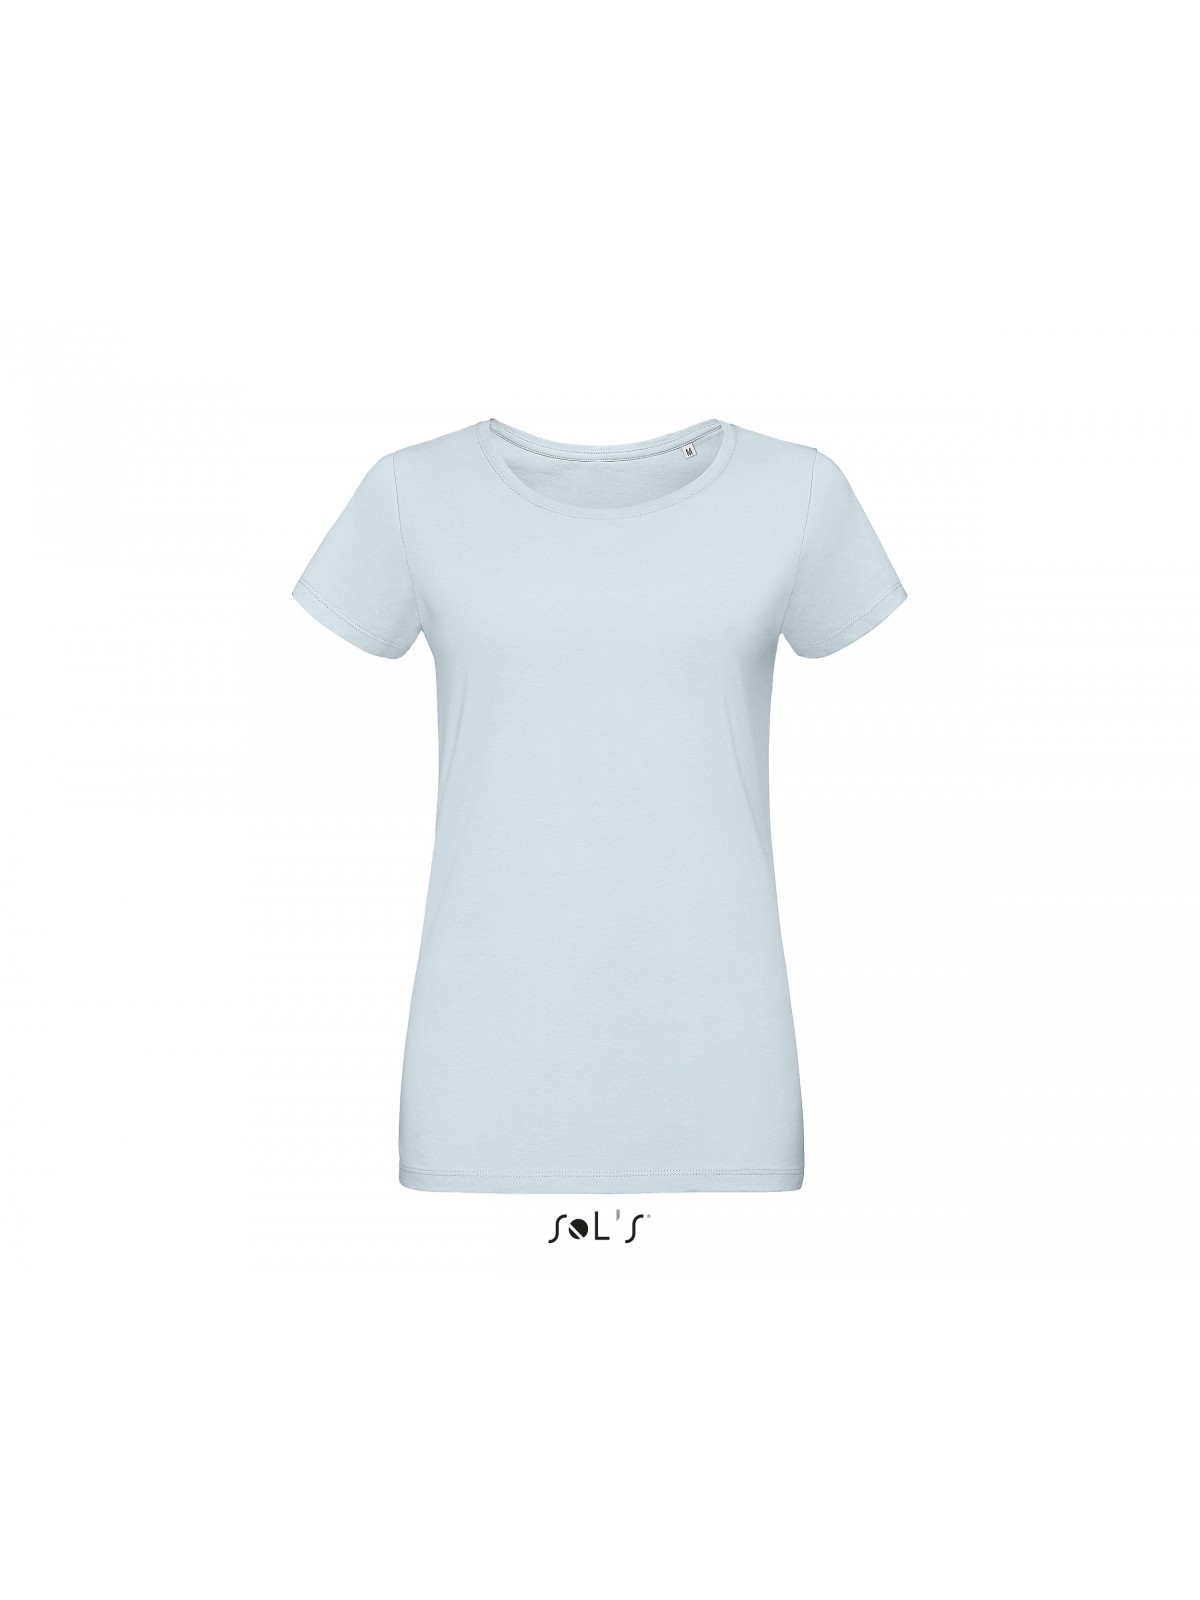 26-717 T-shirt Martin - impression digitale personnalisé